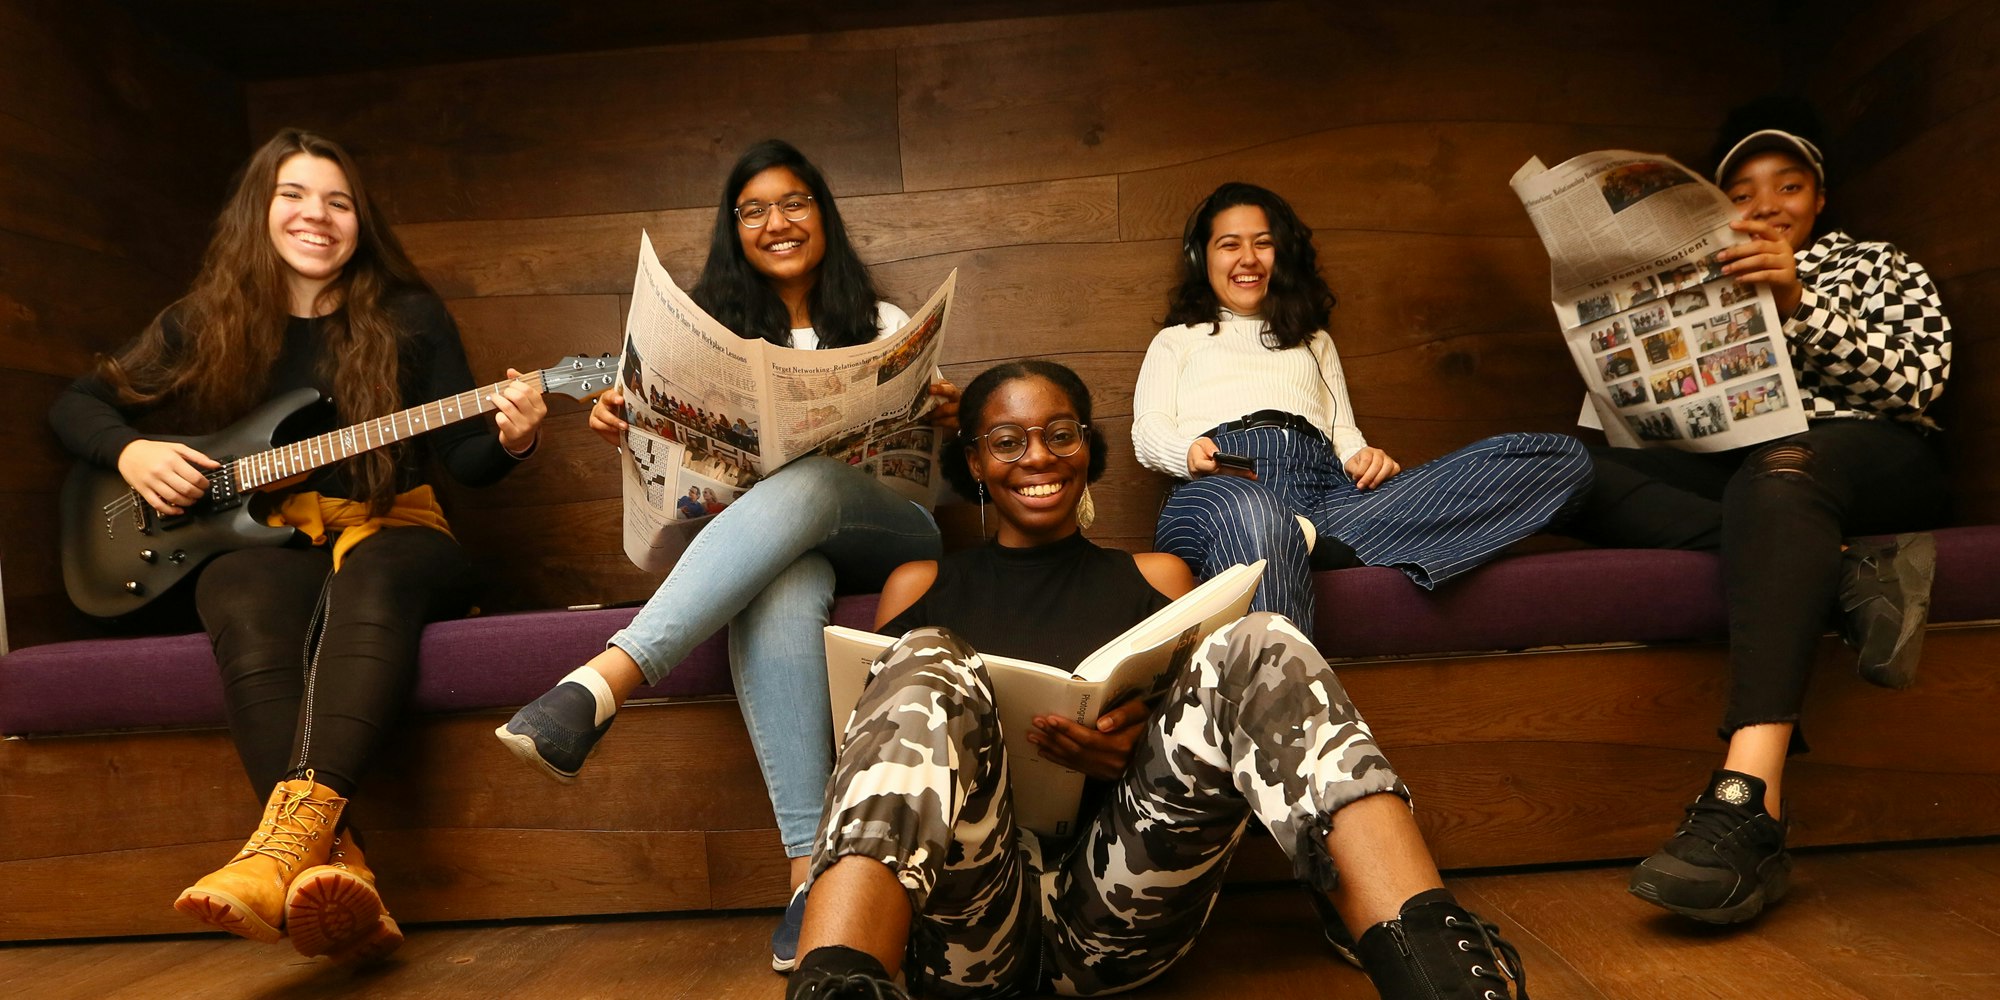 En la fotografía, cinco chicas de diferentes etnias sostienen libros (sentadas adelante en el piso) y otras, una guitarra y un periódico (sentadas en el sofá de atrás).